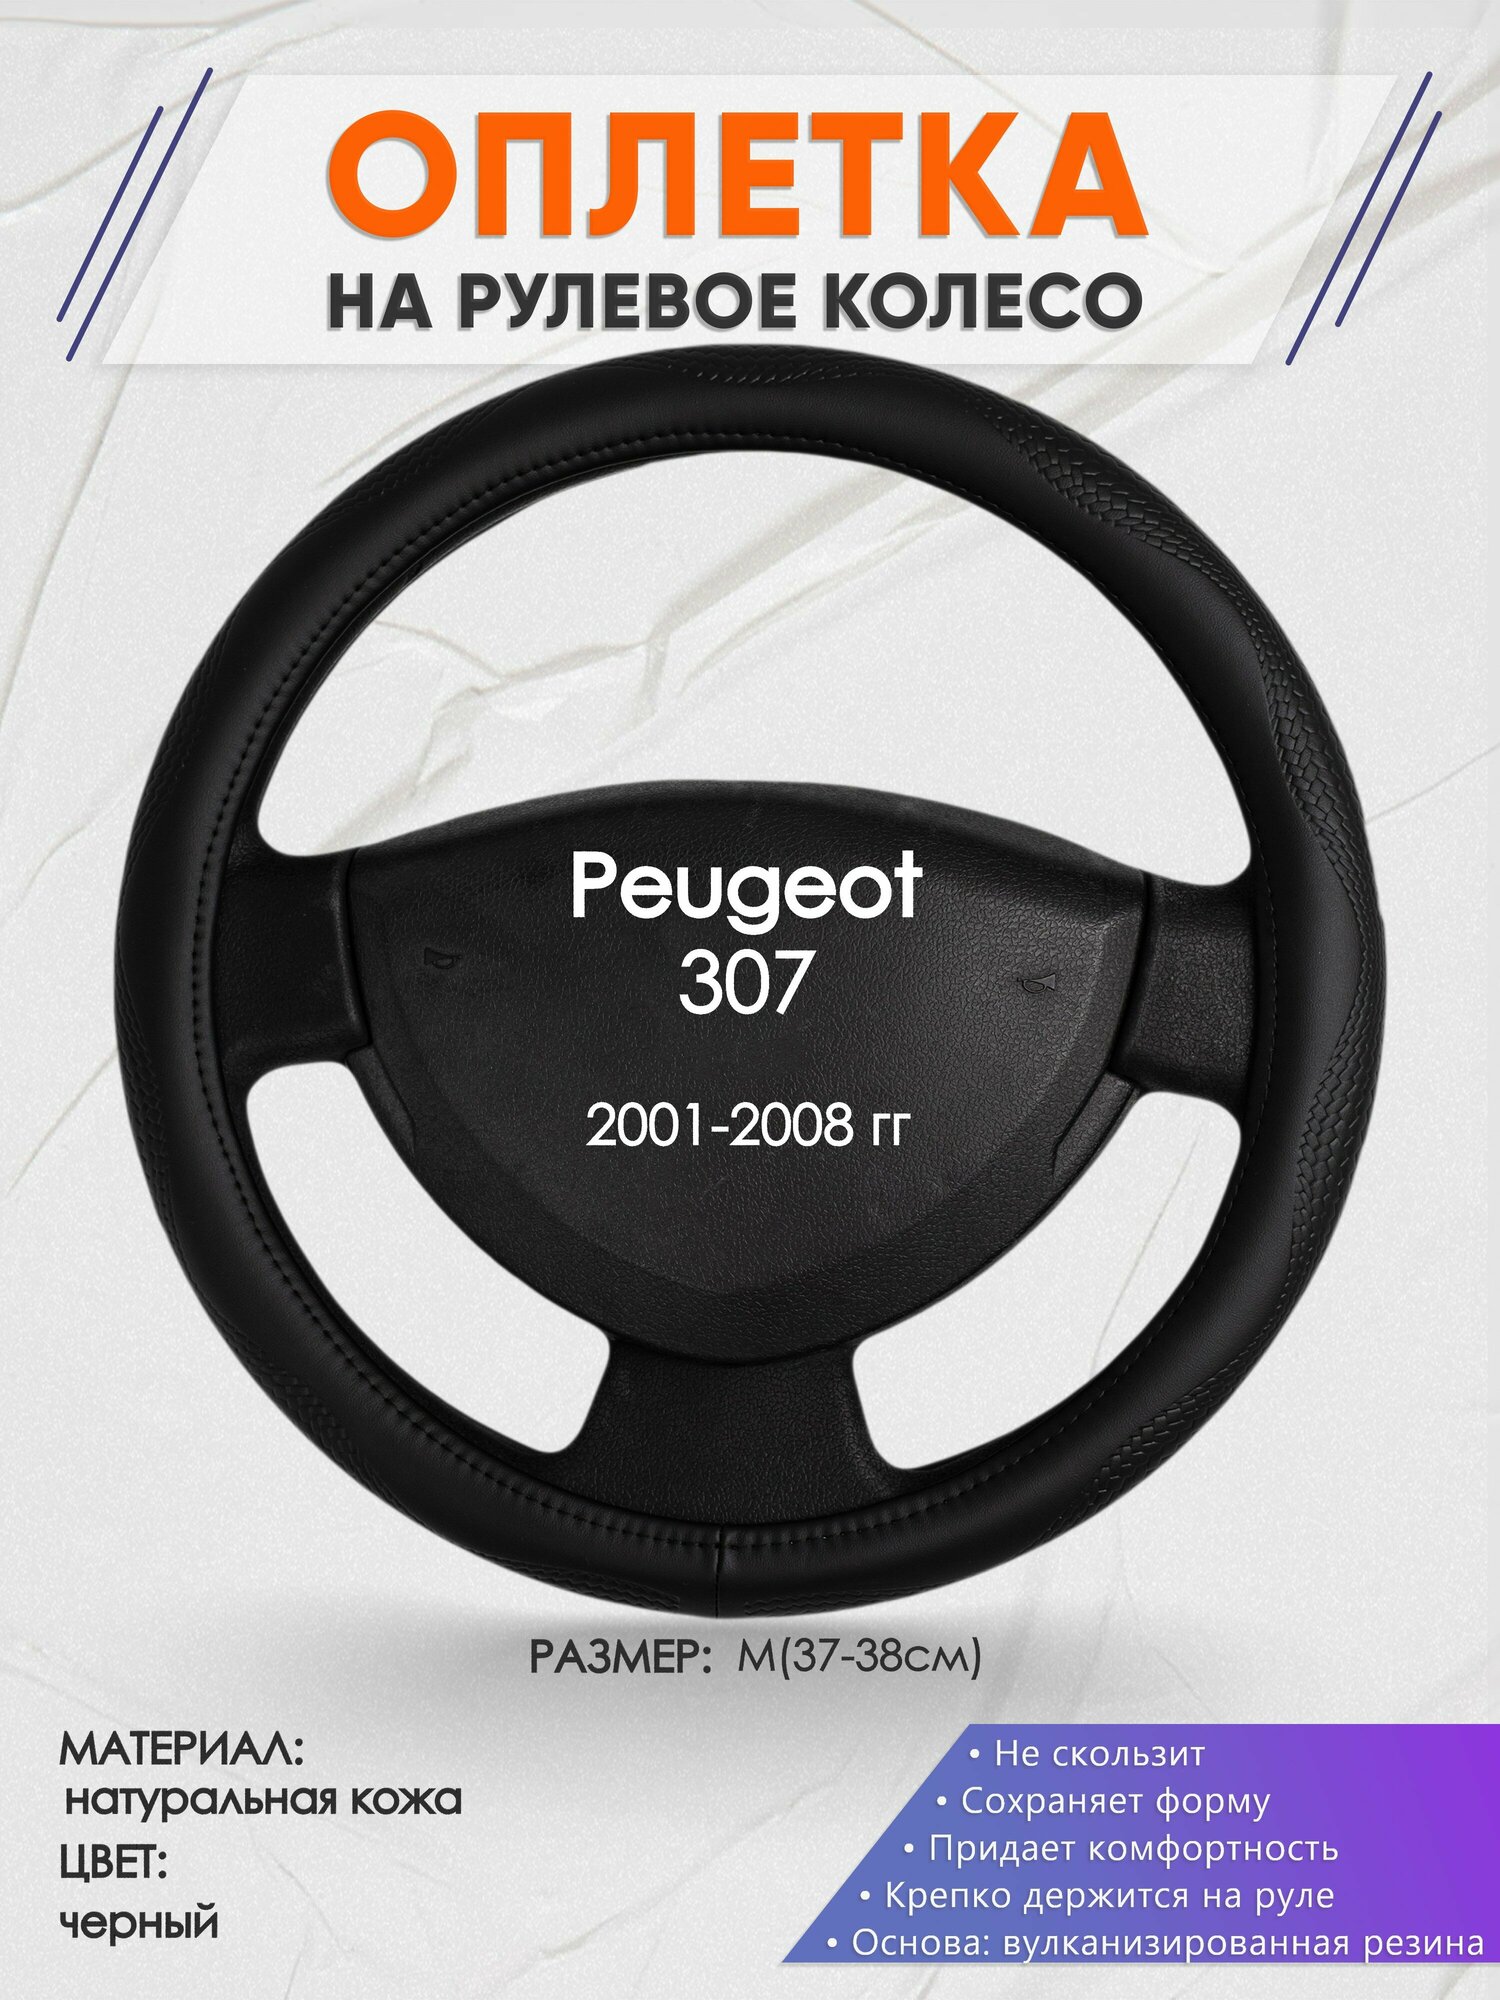 Оплетка на руль для Peugeot 307 (Пежо ) 2001-2008 M(37-38см) Натуральная кожа 31